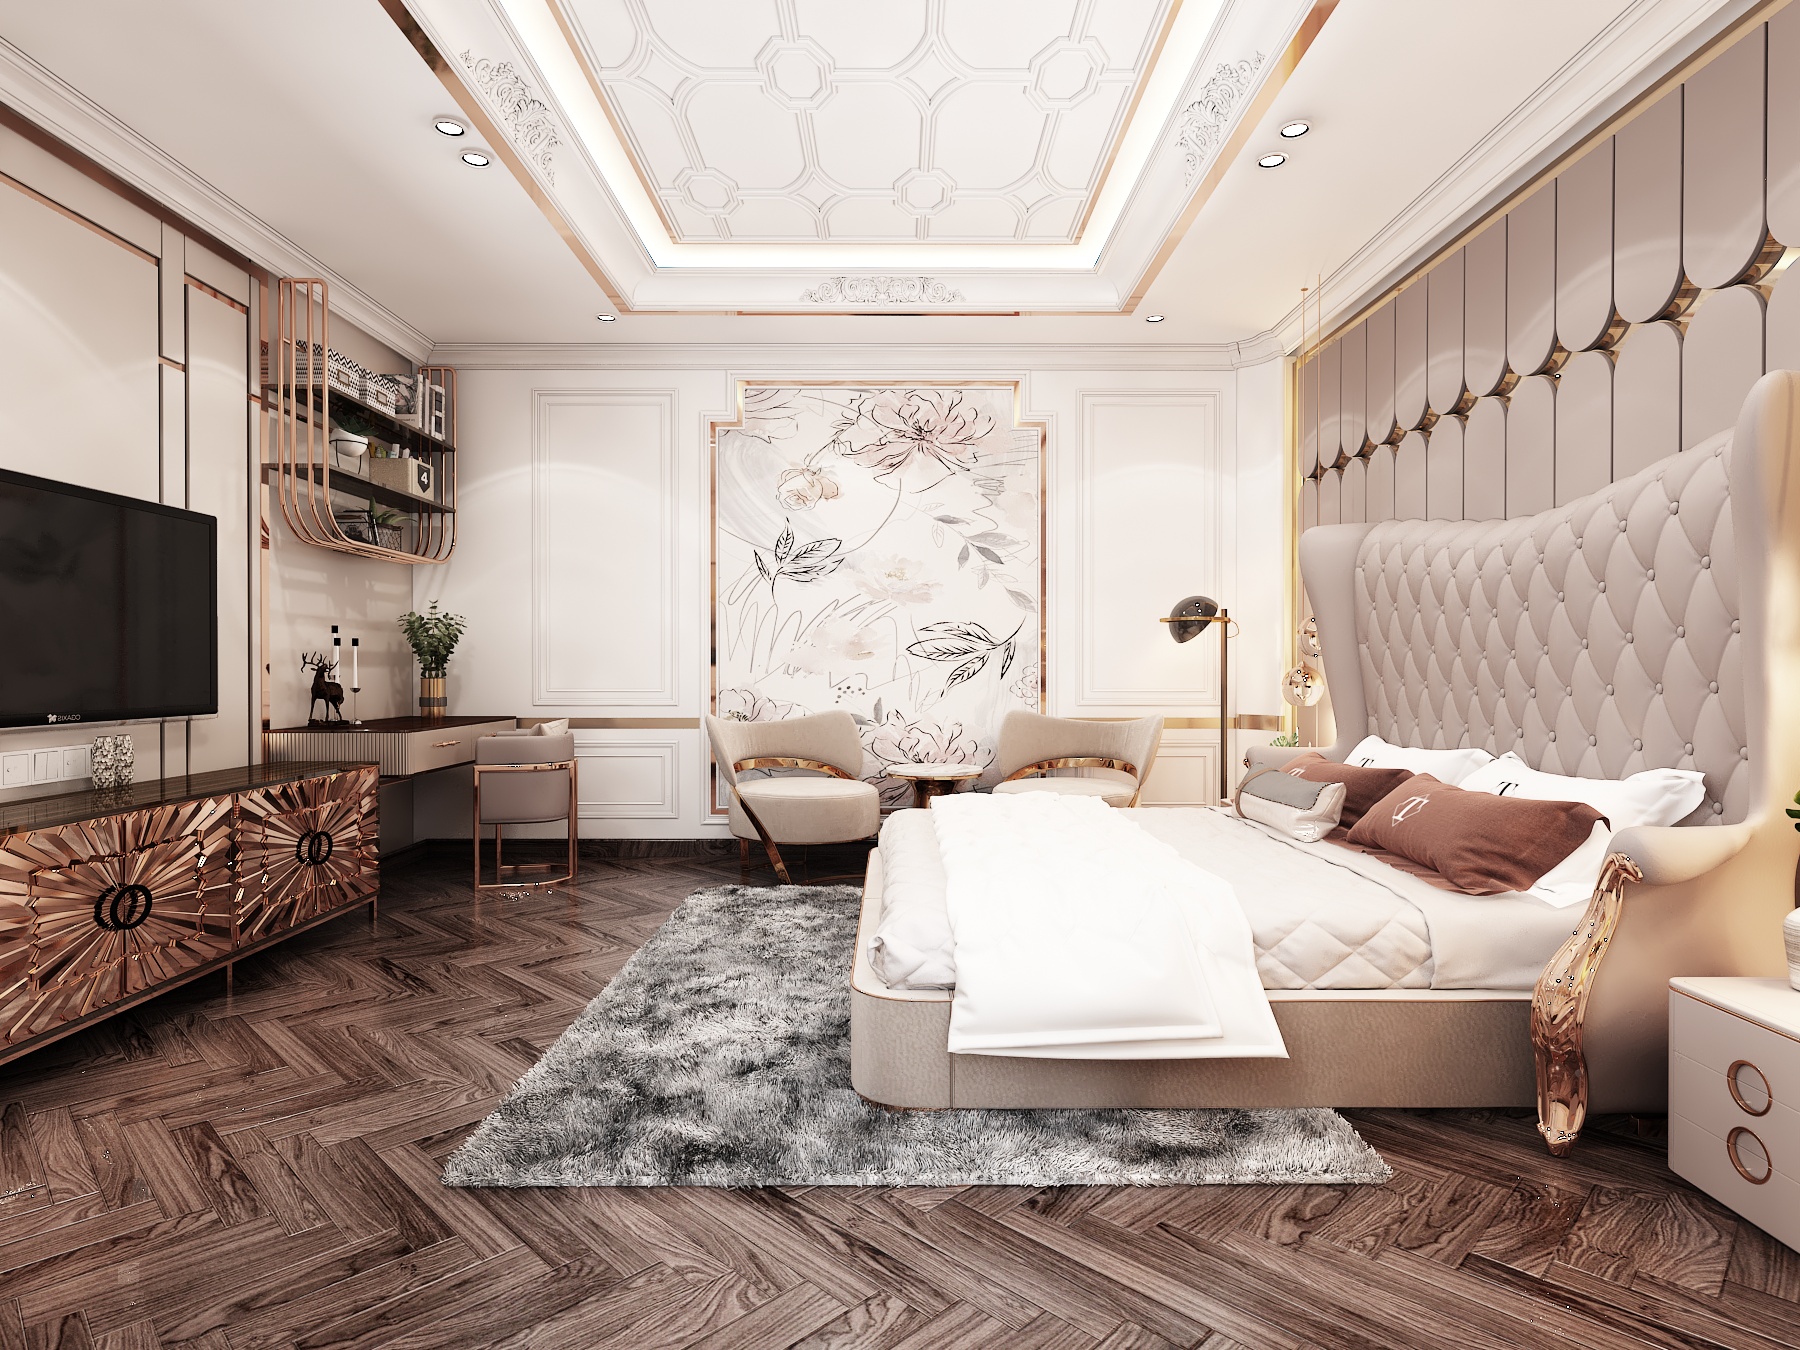 Thiết kế nội thất Biệt Thự tại Hồ Chí Minh BIỆT THỰ BÌNH TÂN 1645236522 13